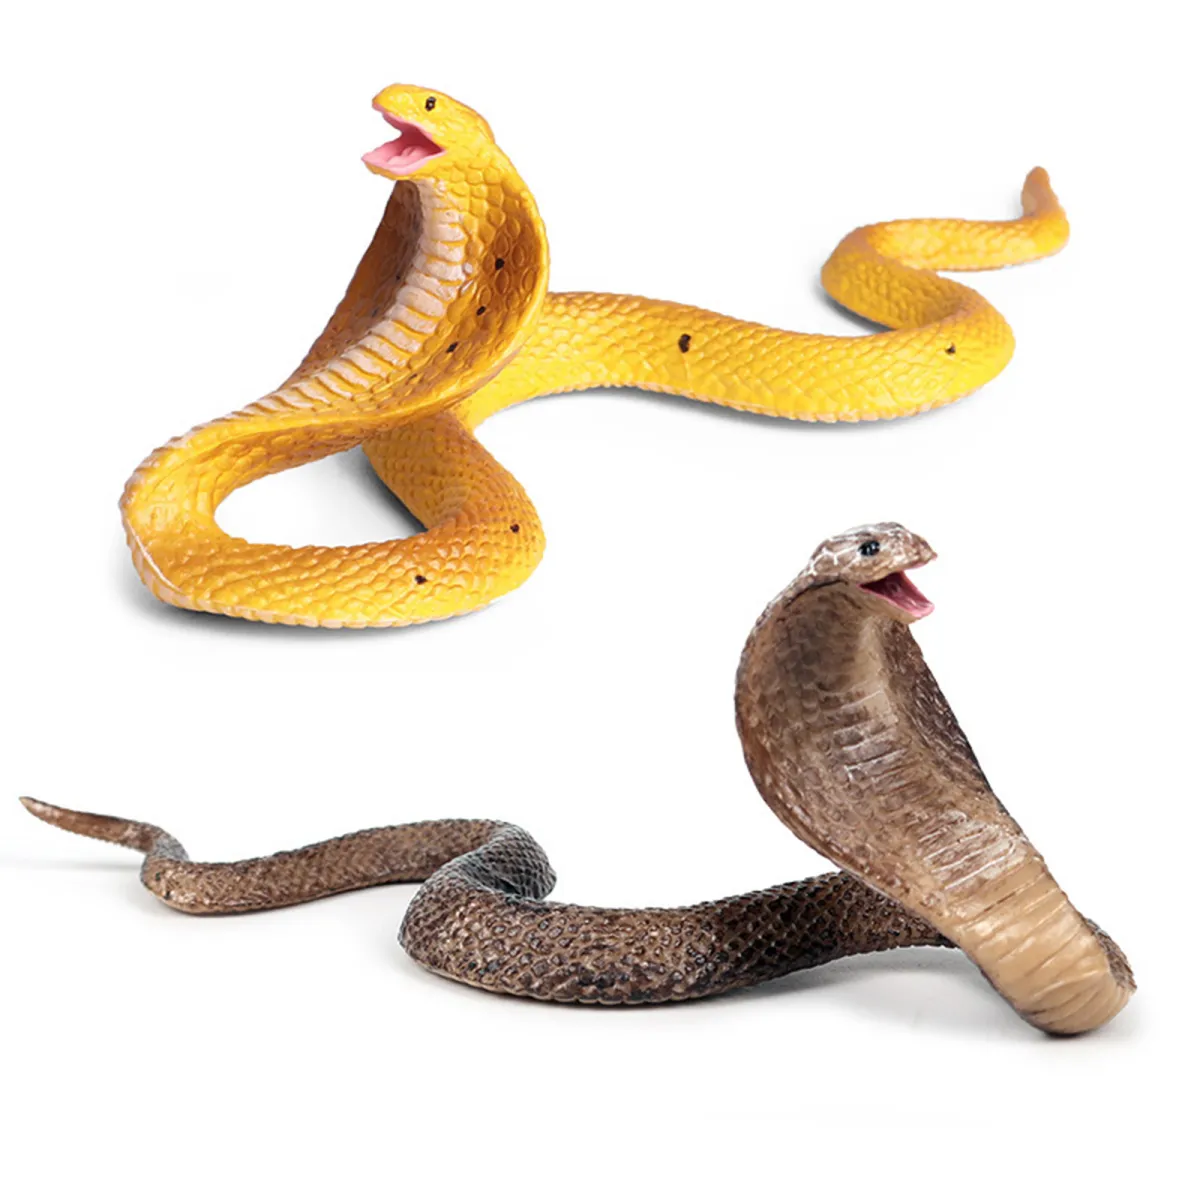 Đồ chơi rắn giả thật: Trở thành “người chơi chính” trong trò chơi đầy thách thức của rắn giả thật. Sở hữu một con rắn đầy mạo hiểm và sẵn sàng chinh phục mọi thử thách vốn là niềm mơ ước của rất nhiều người chơi đấy!